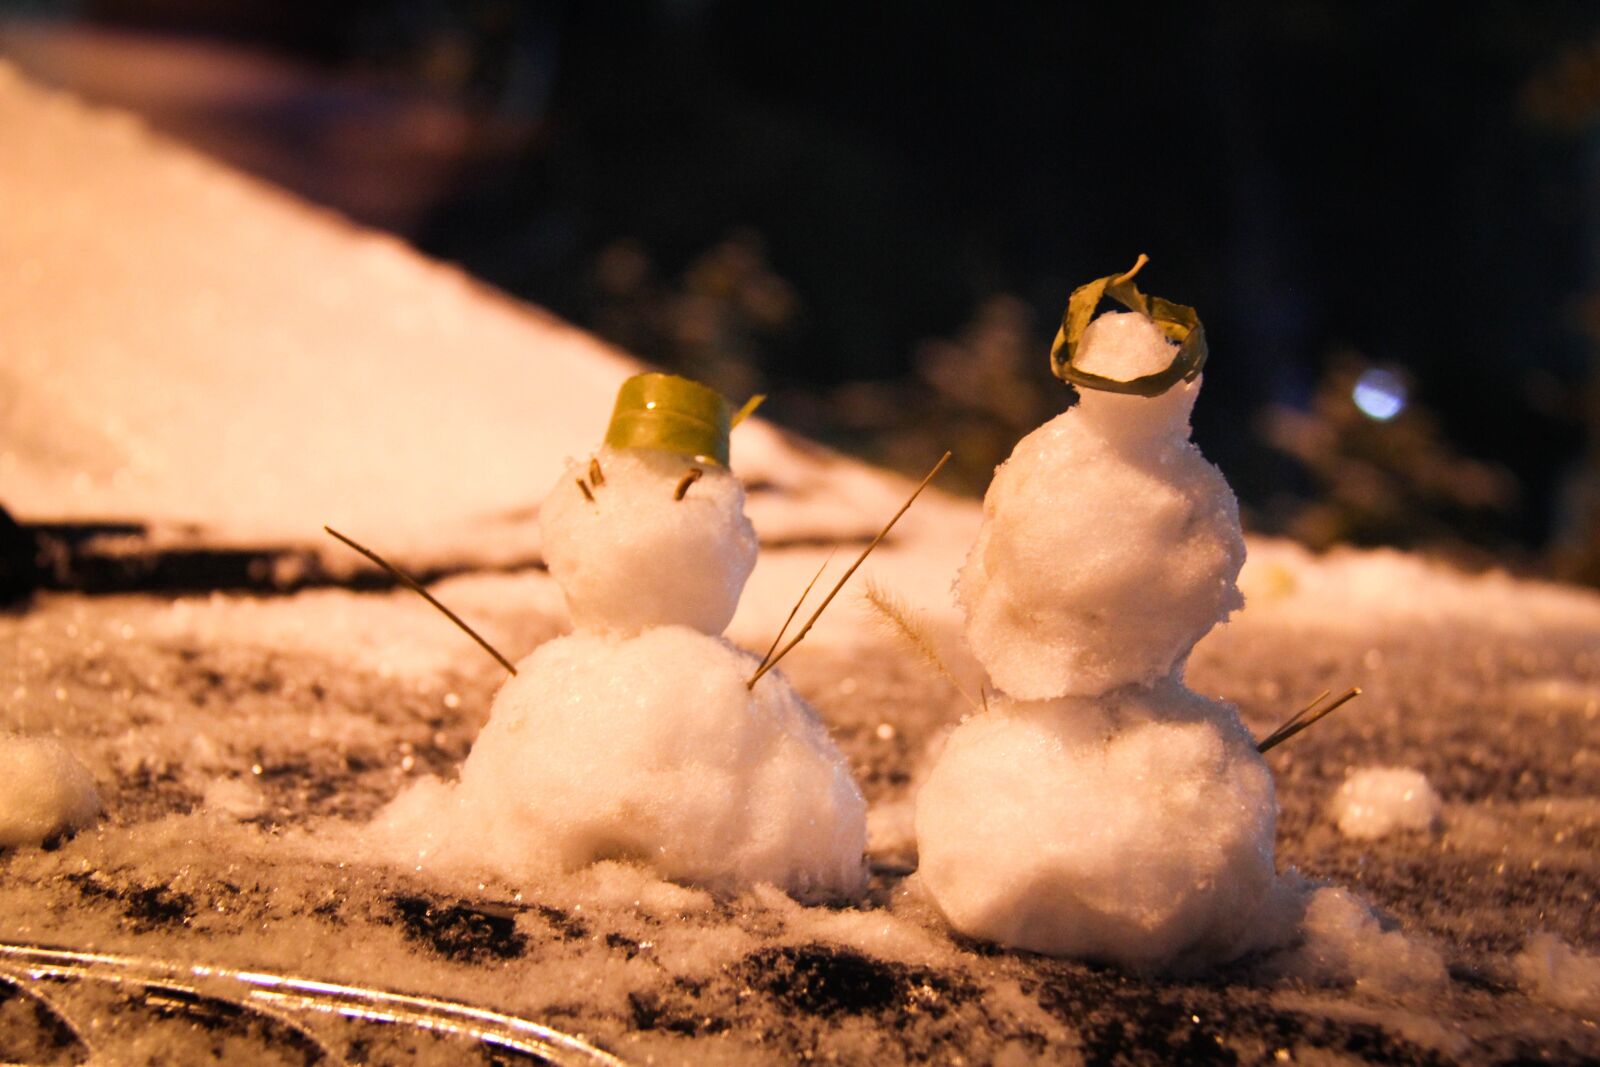 Canon EOS 60D sample photo. Snowman, snow, winter photography